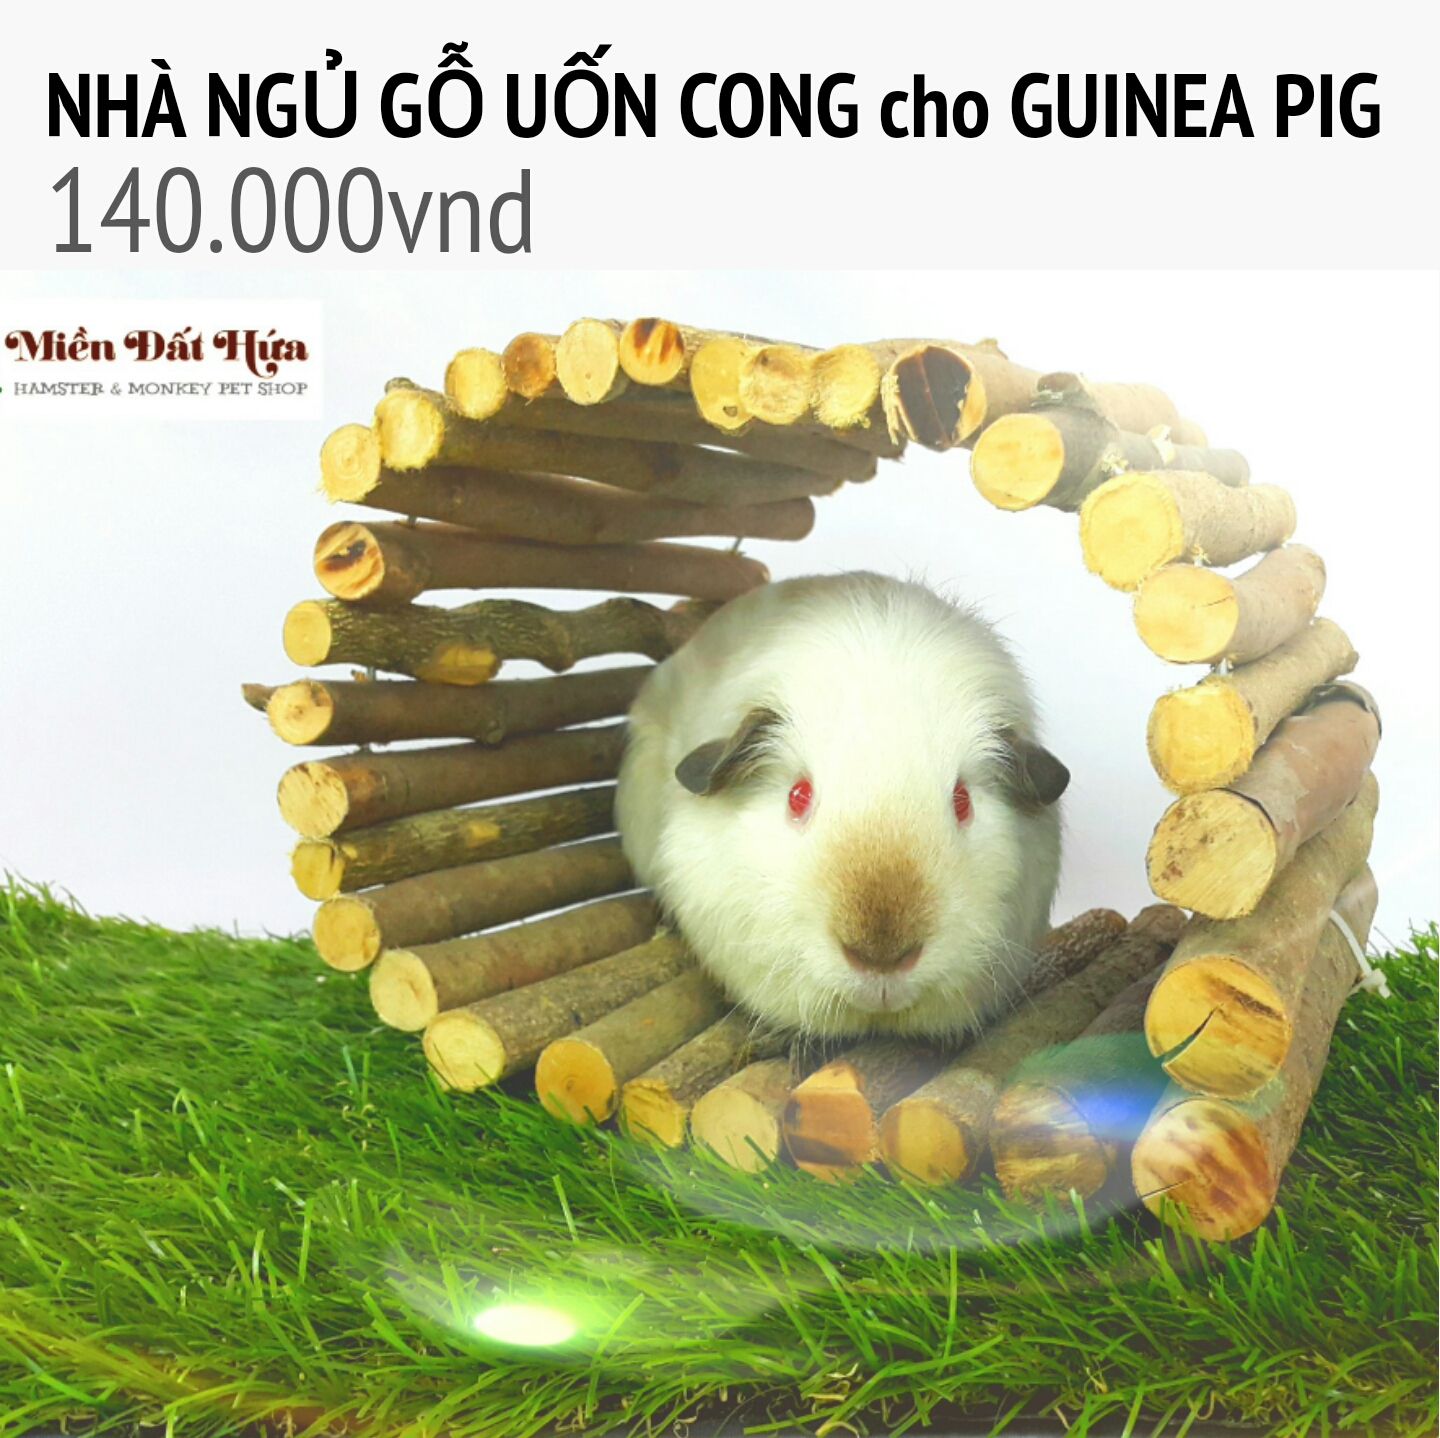 nhà ngủ gỗ uốn cong cho guinea pig